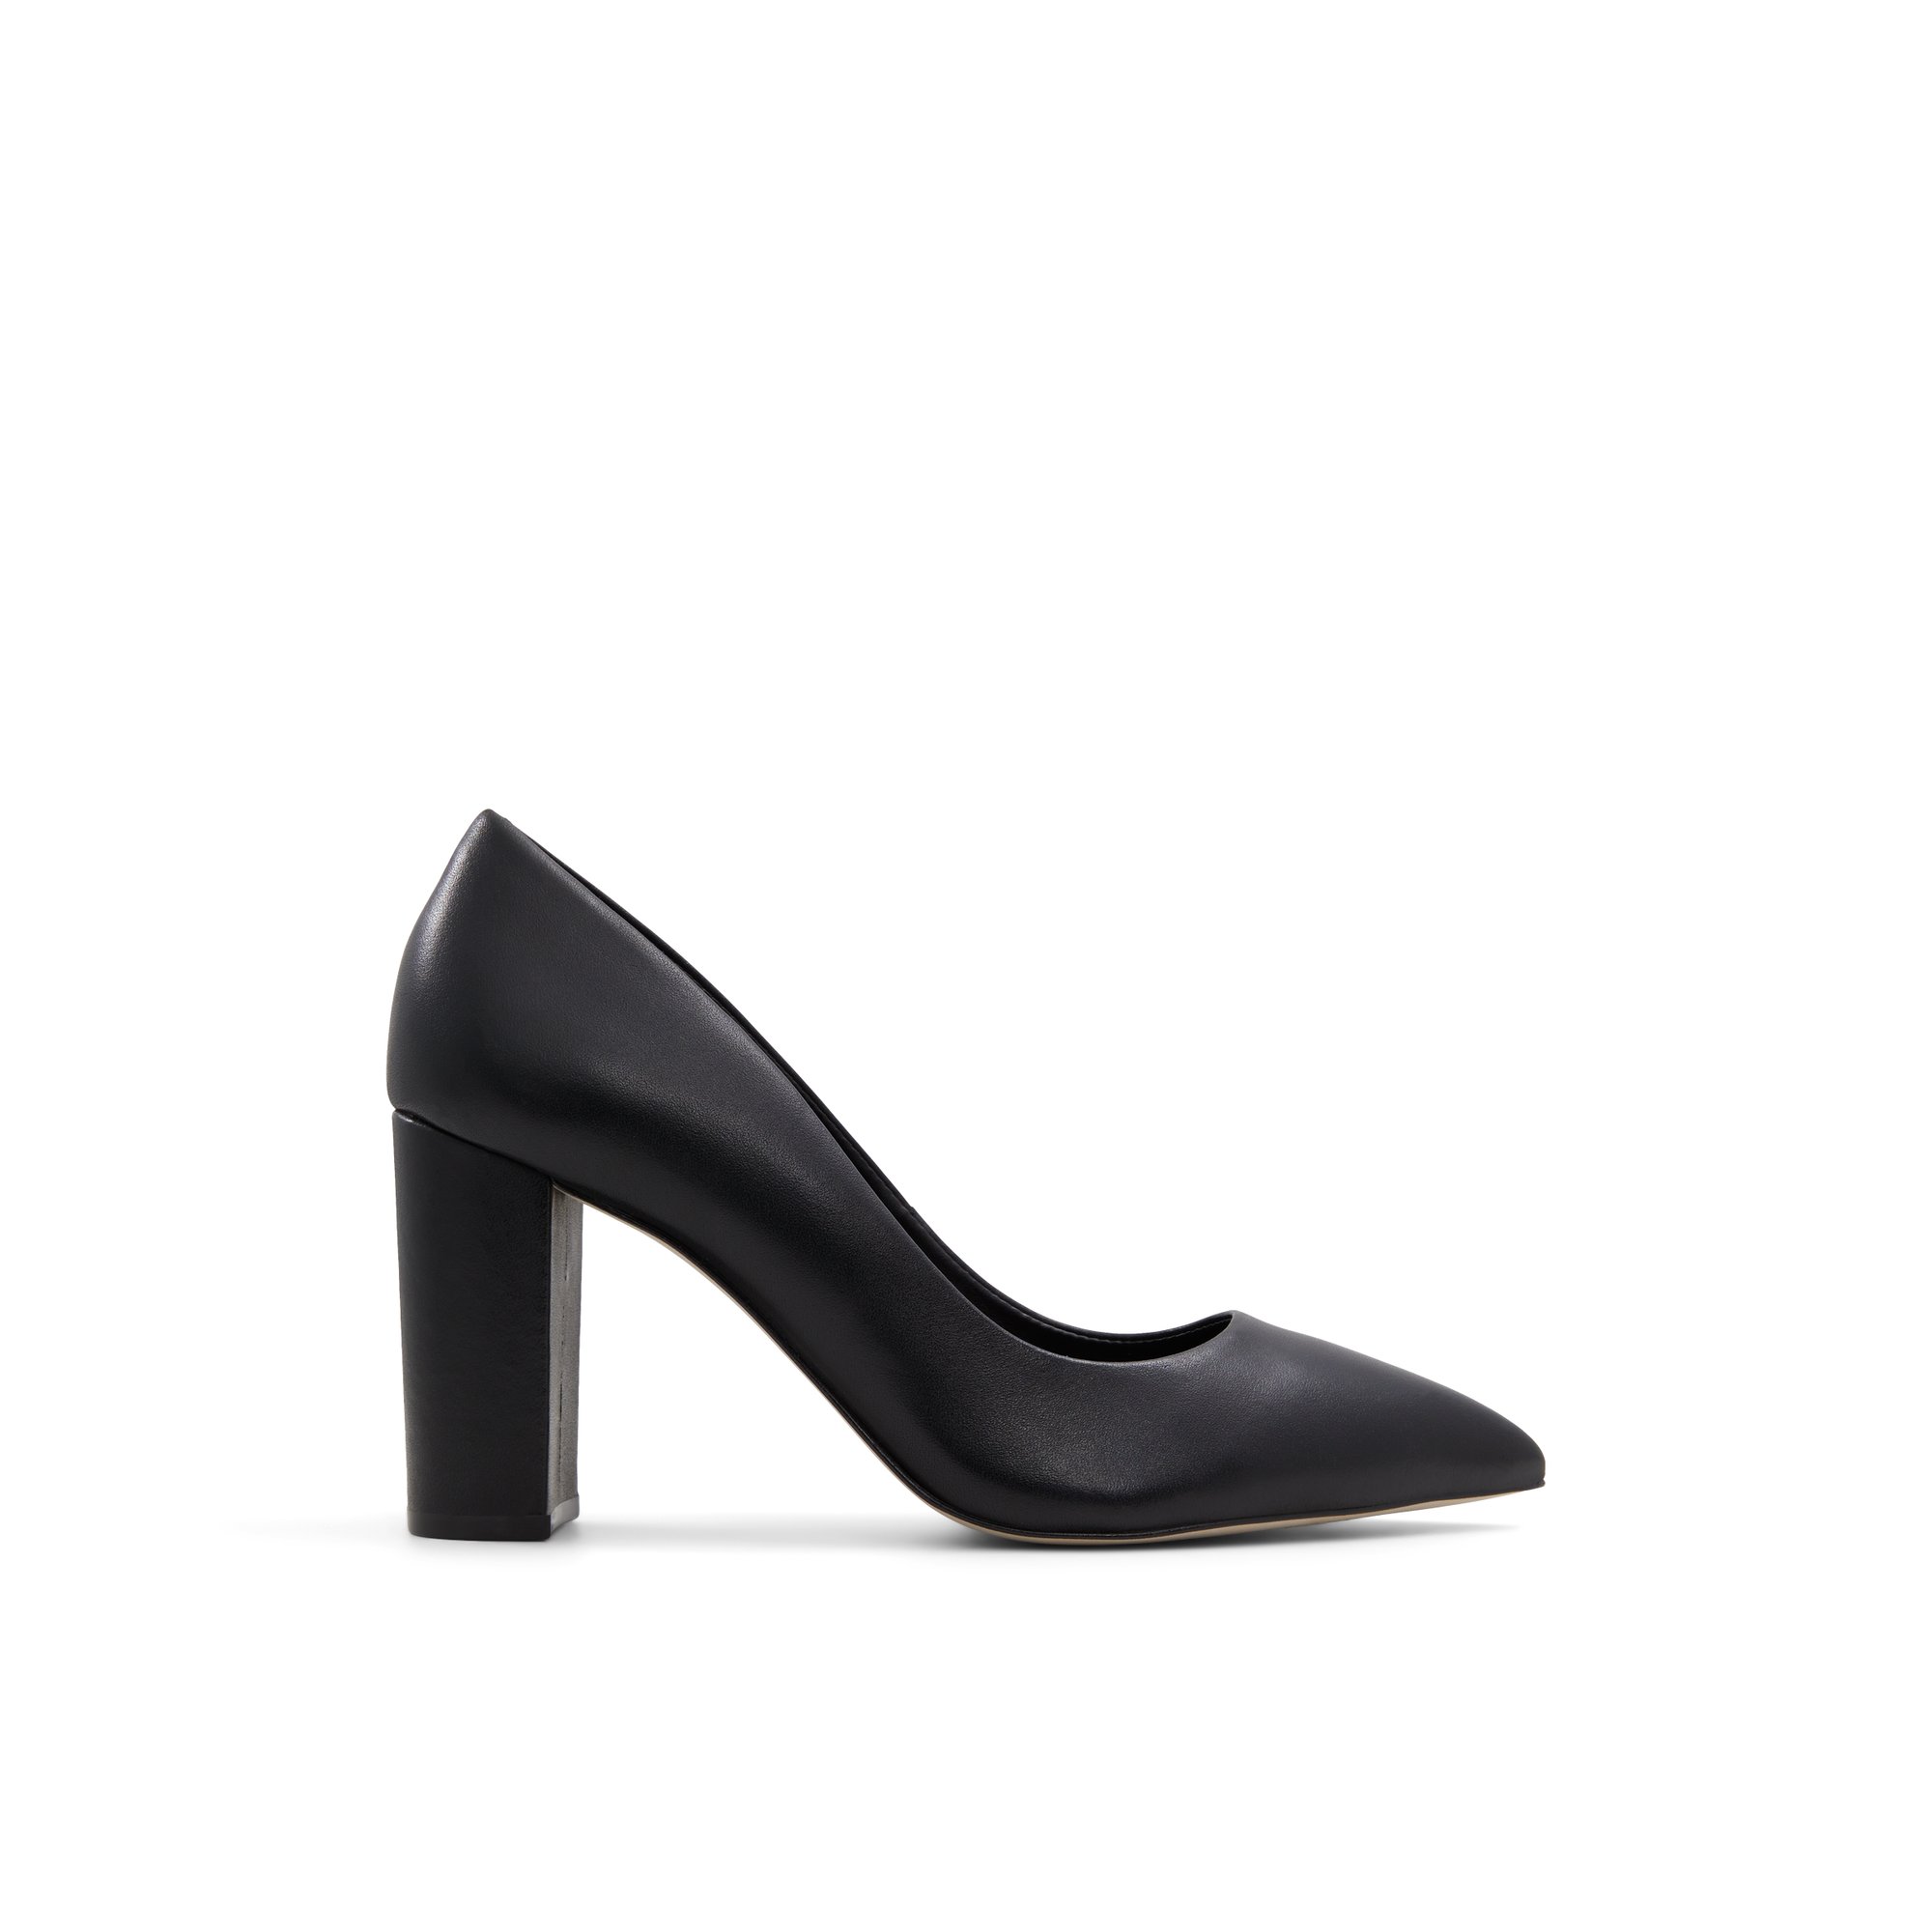 Luca Ferri Illingen - Women's Footwear Shoes Heels Pumps